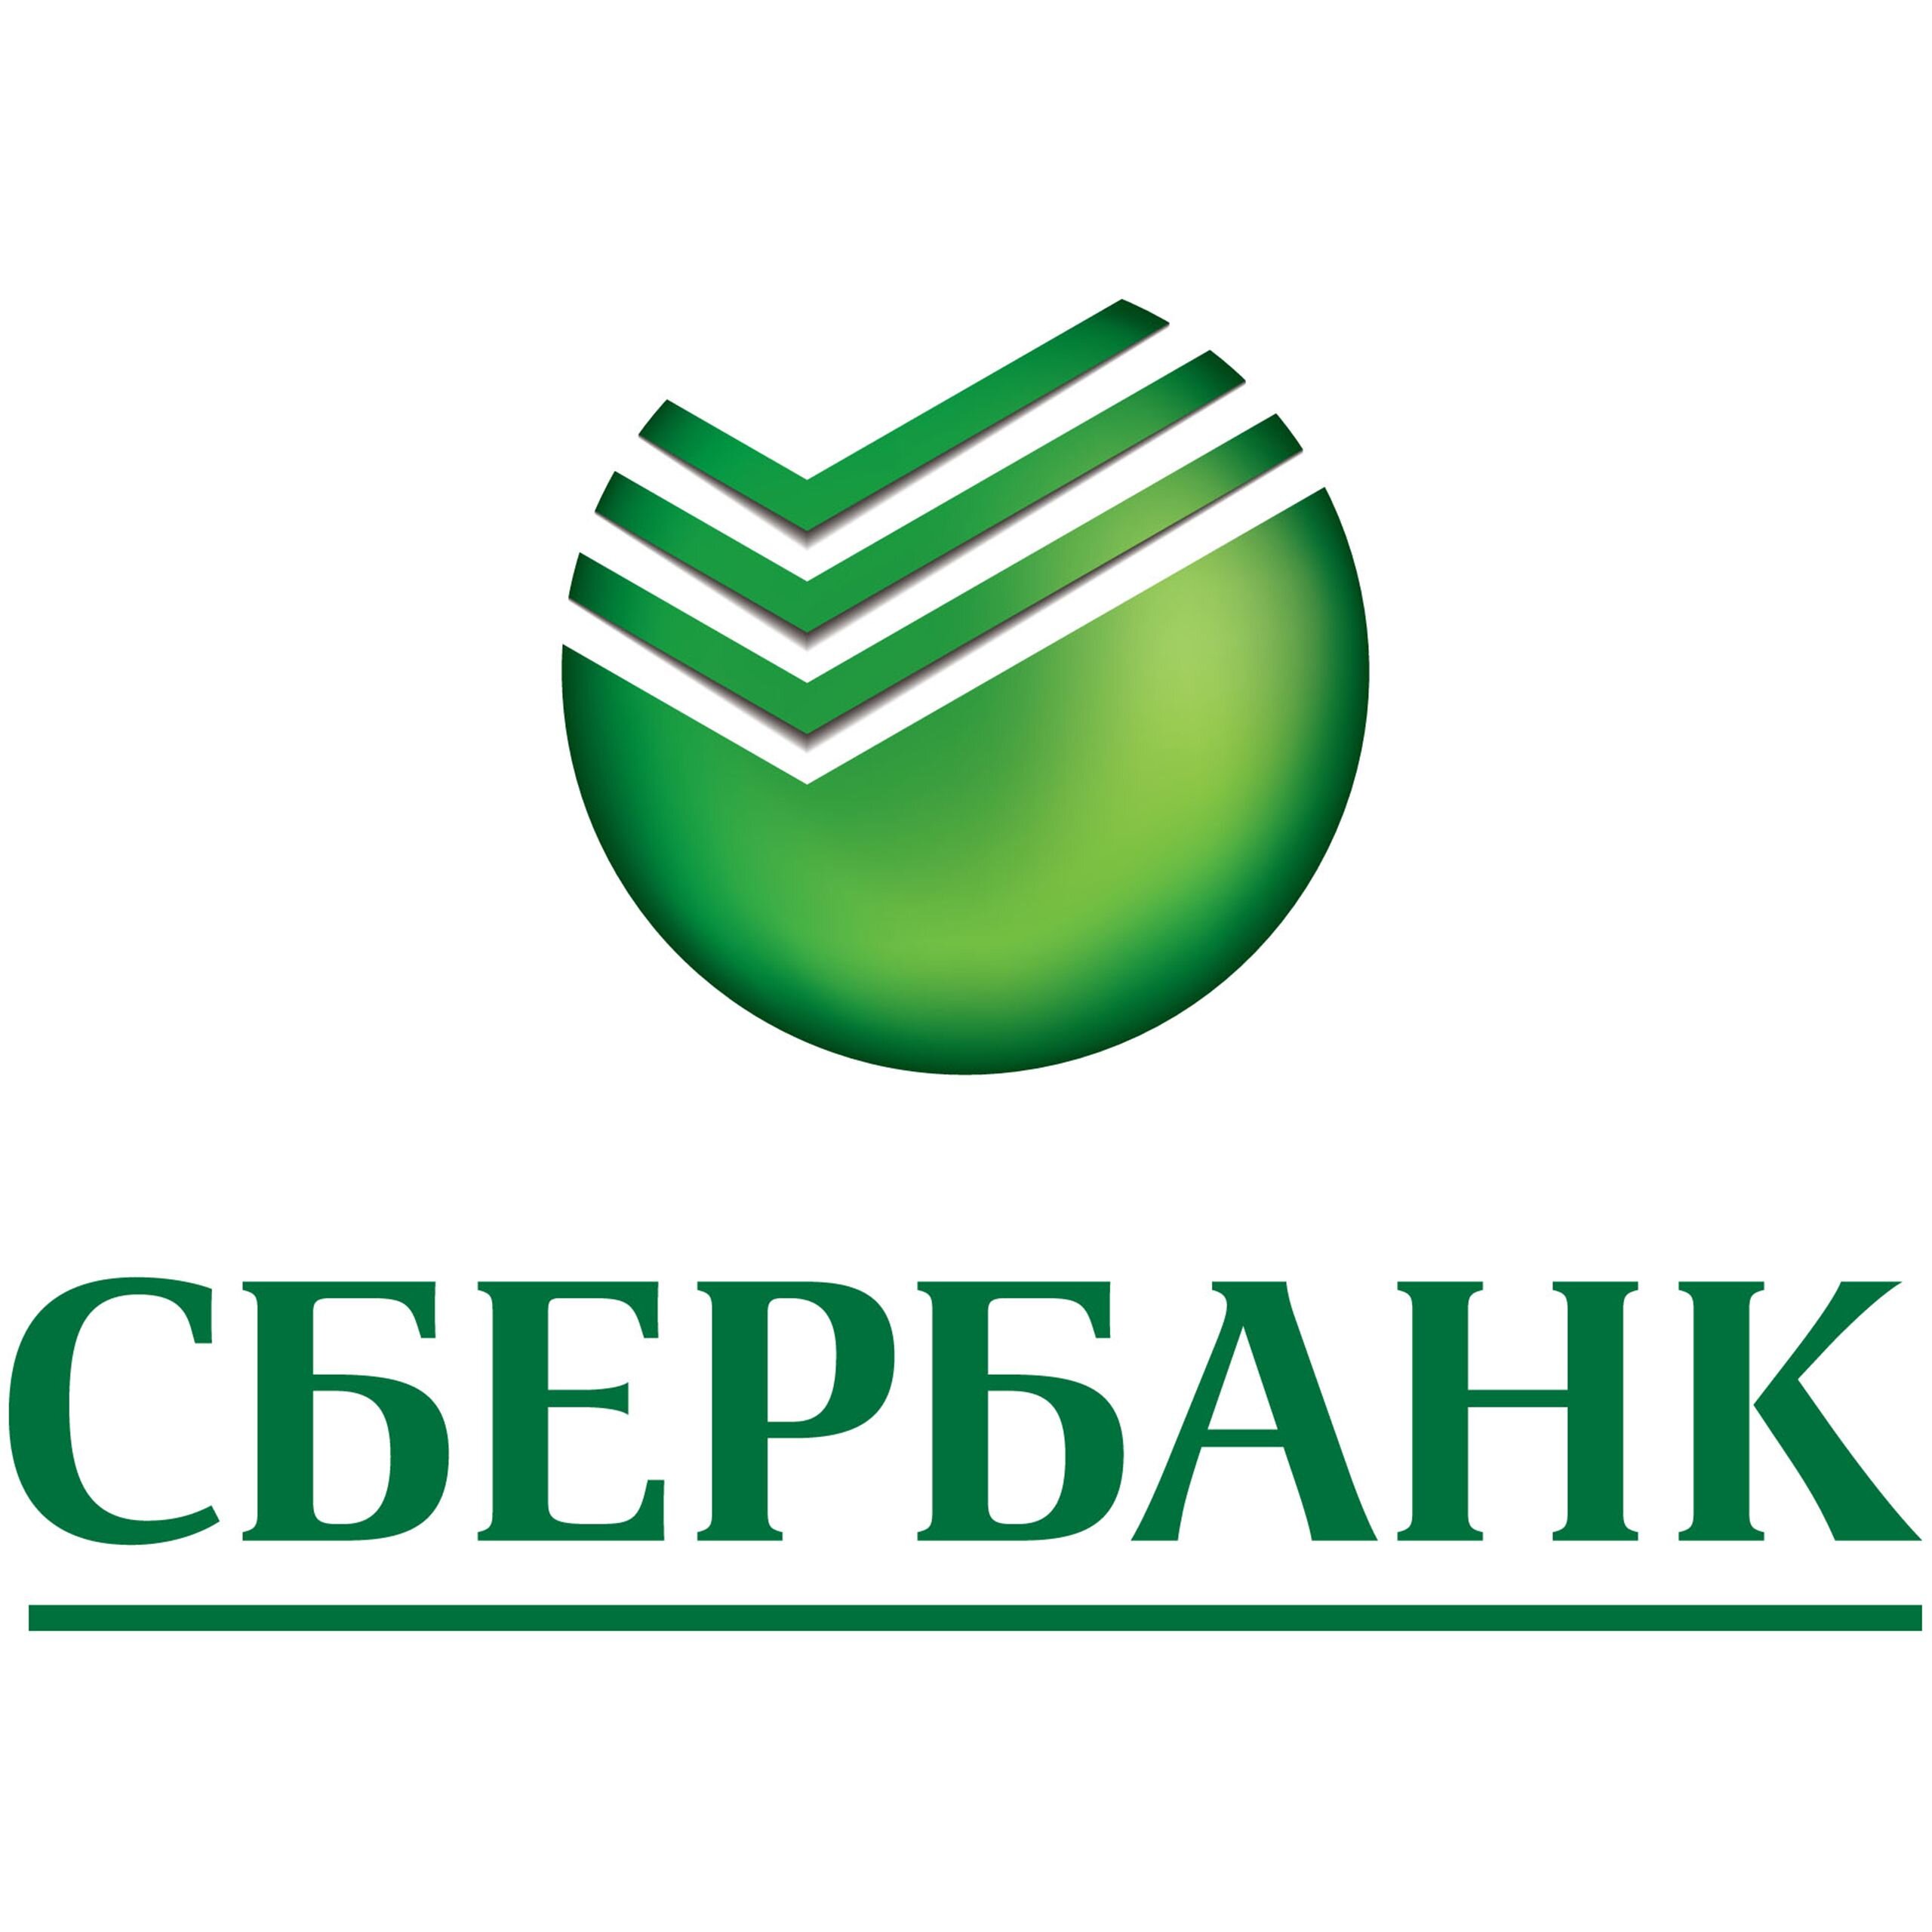 Сбербанк России картинки для презентации